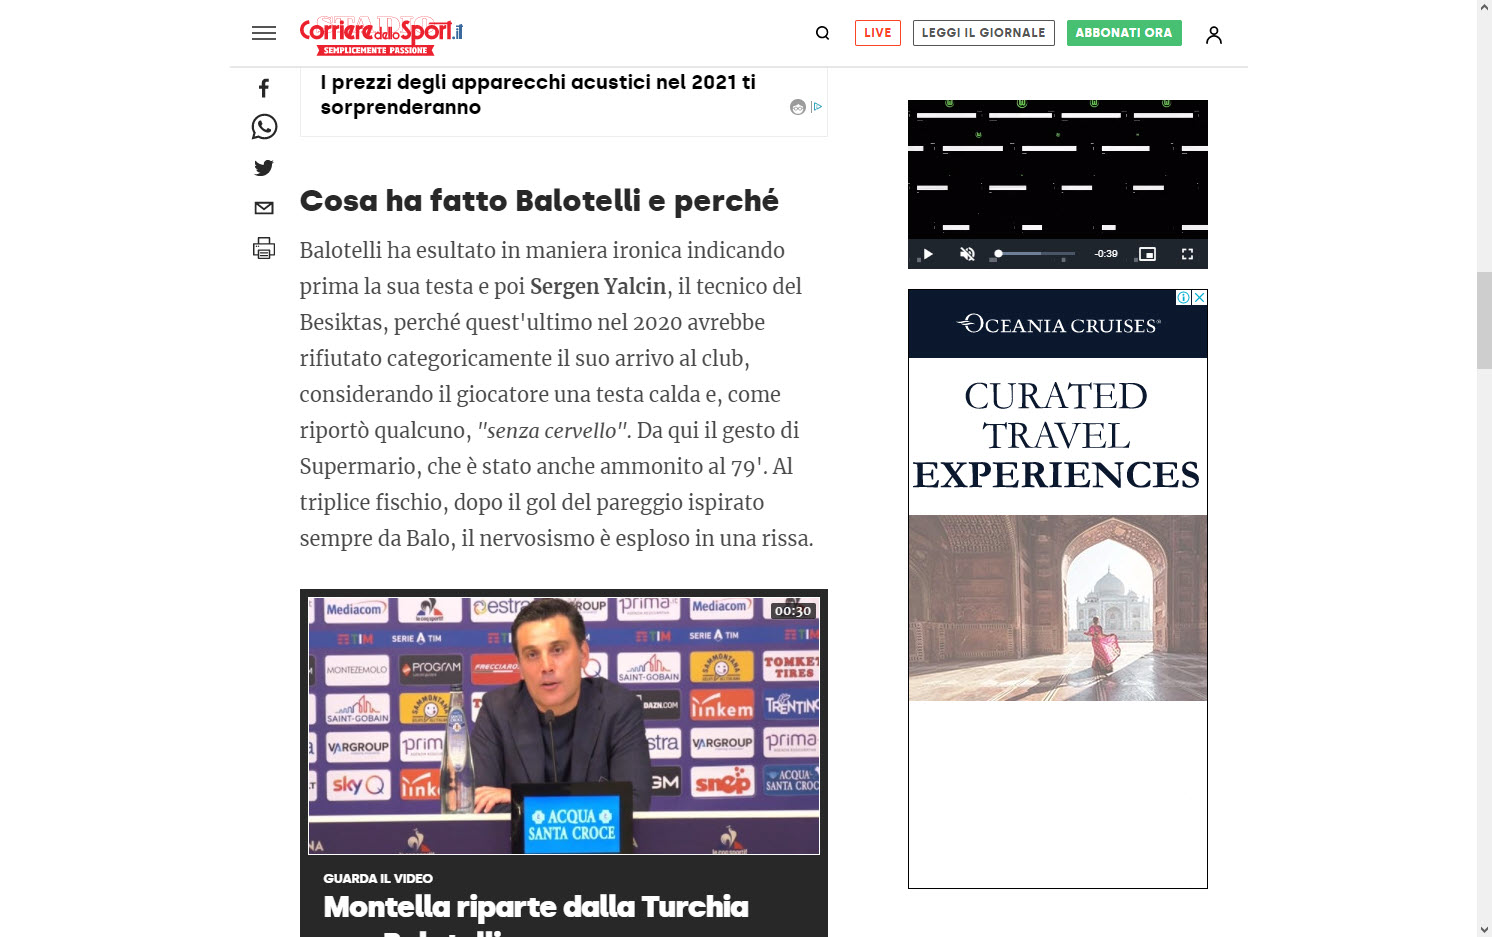 Mario Balotelli’nin hareketi dış basında büyük yankı uyandırdı! 8 yıl sonra intikamını aldı